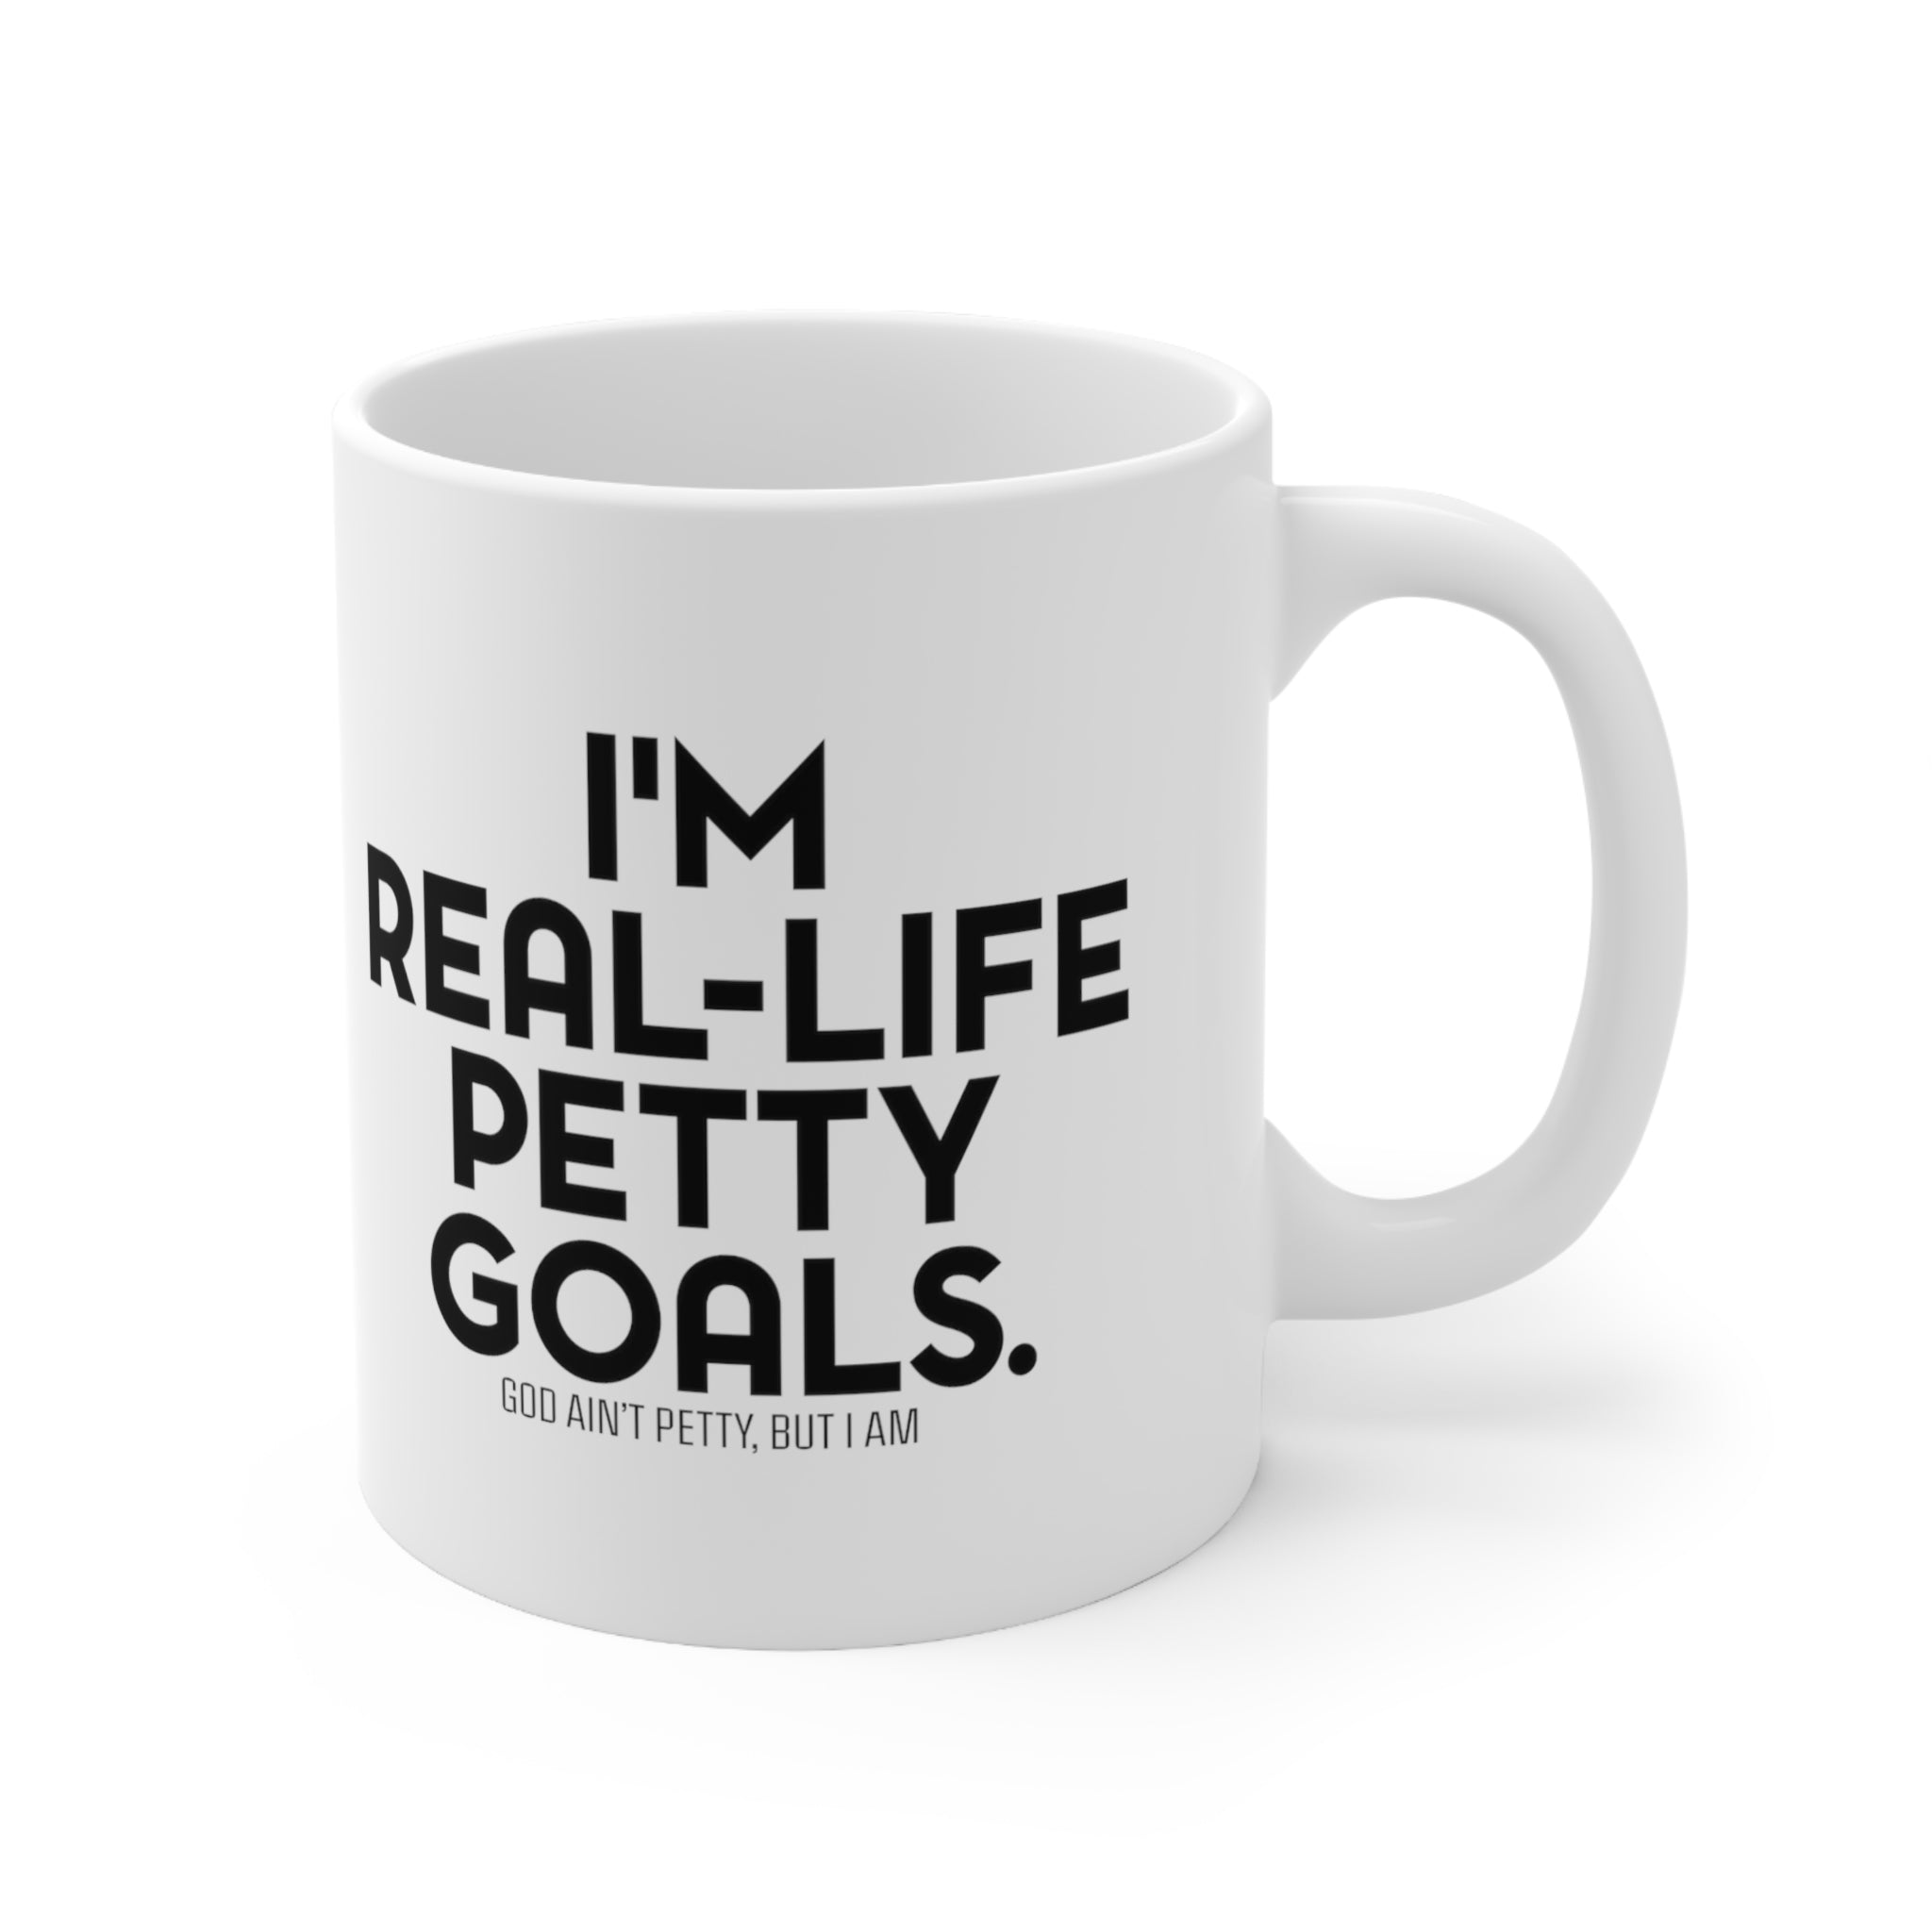 I'm real-life petty goals Mug 11oz (White/Black)-Mug-The Original God Ain't Petty But I Am